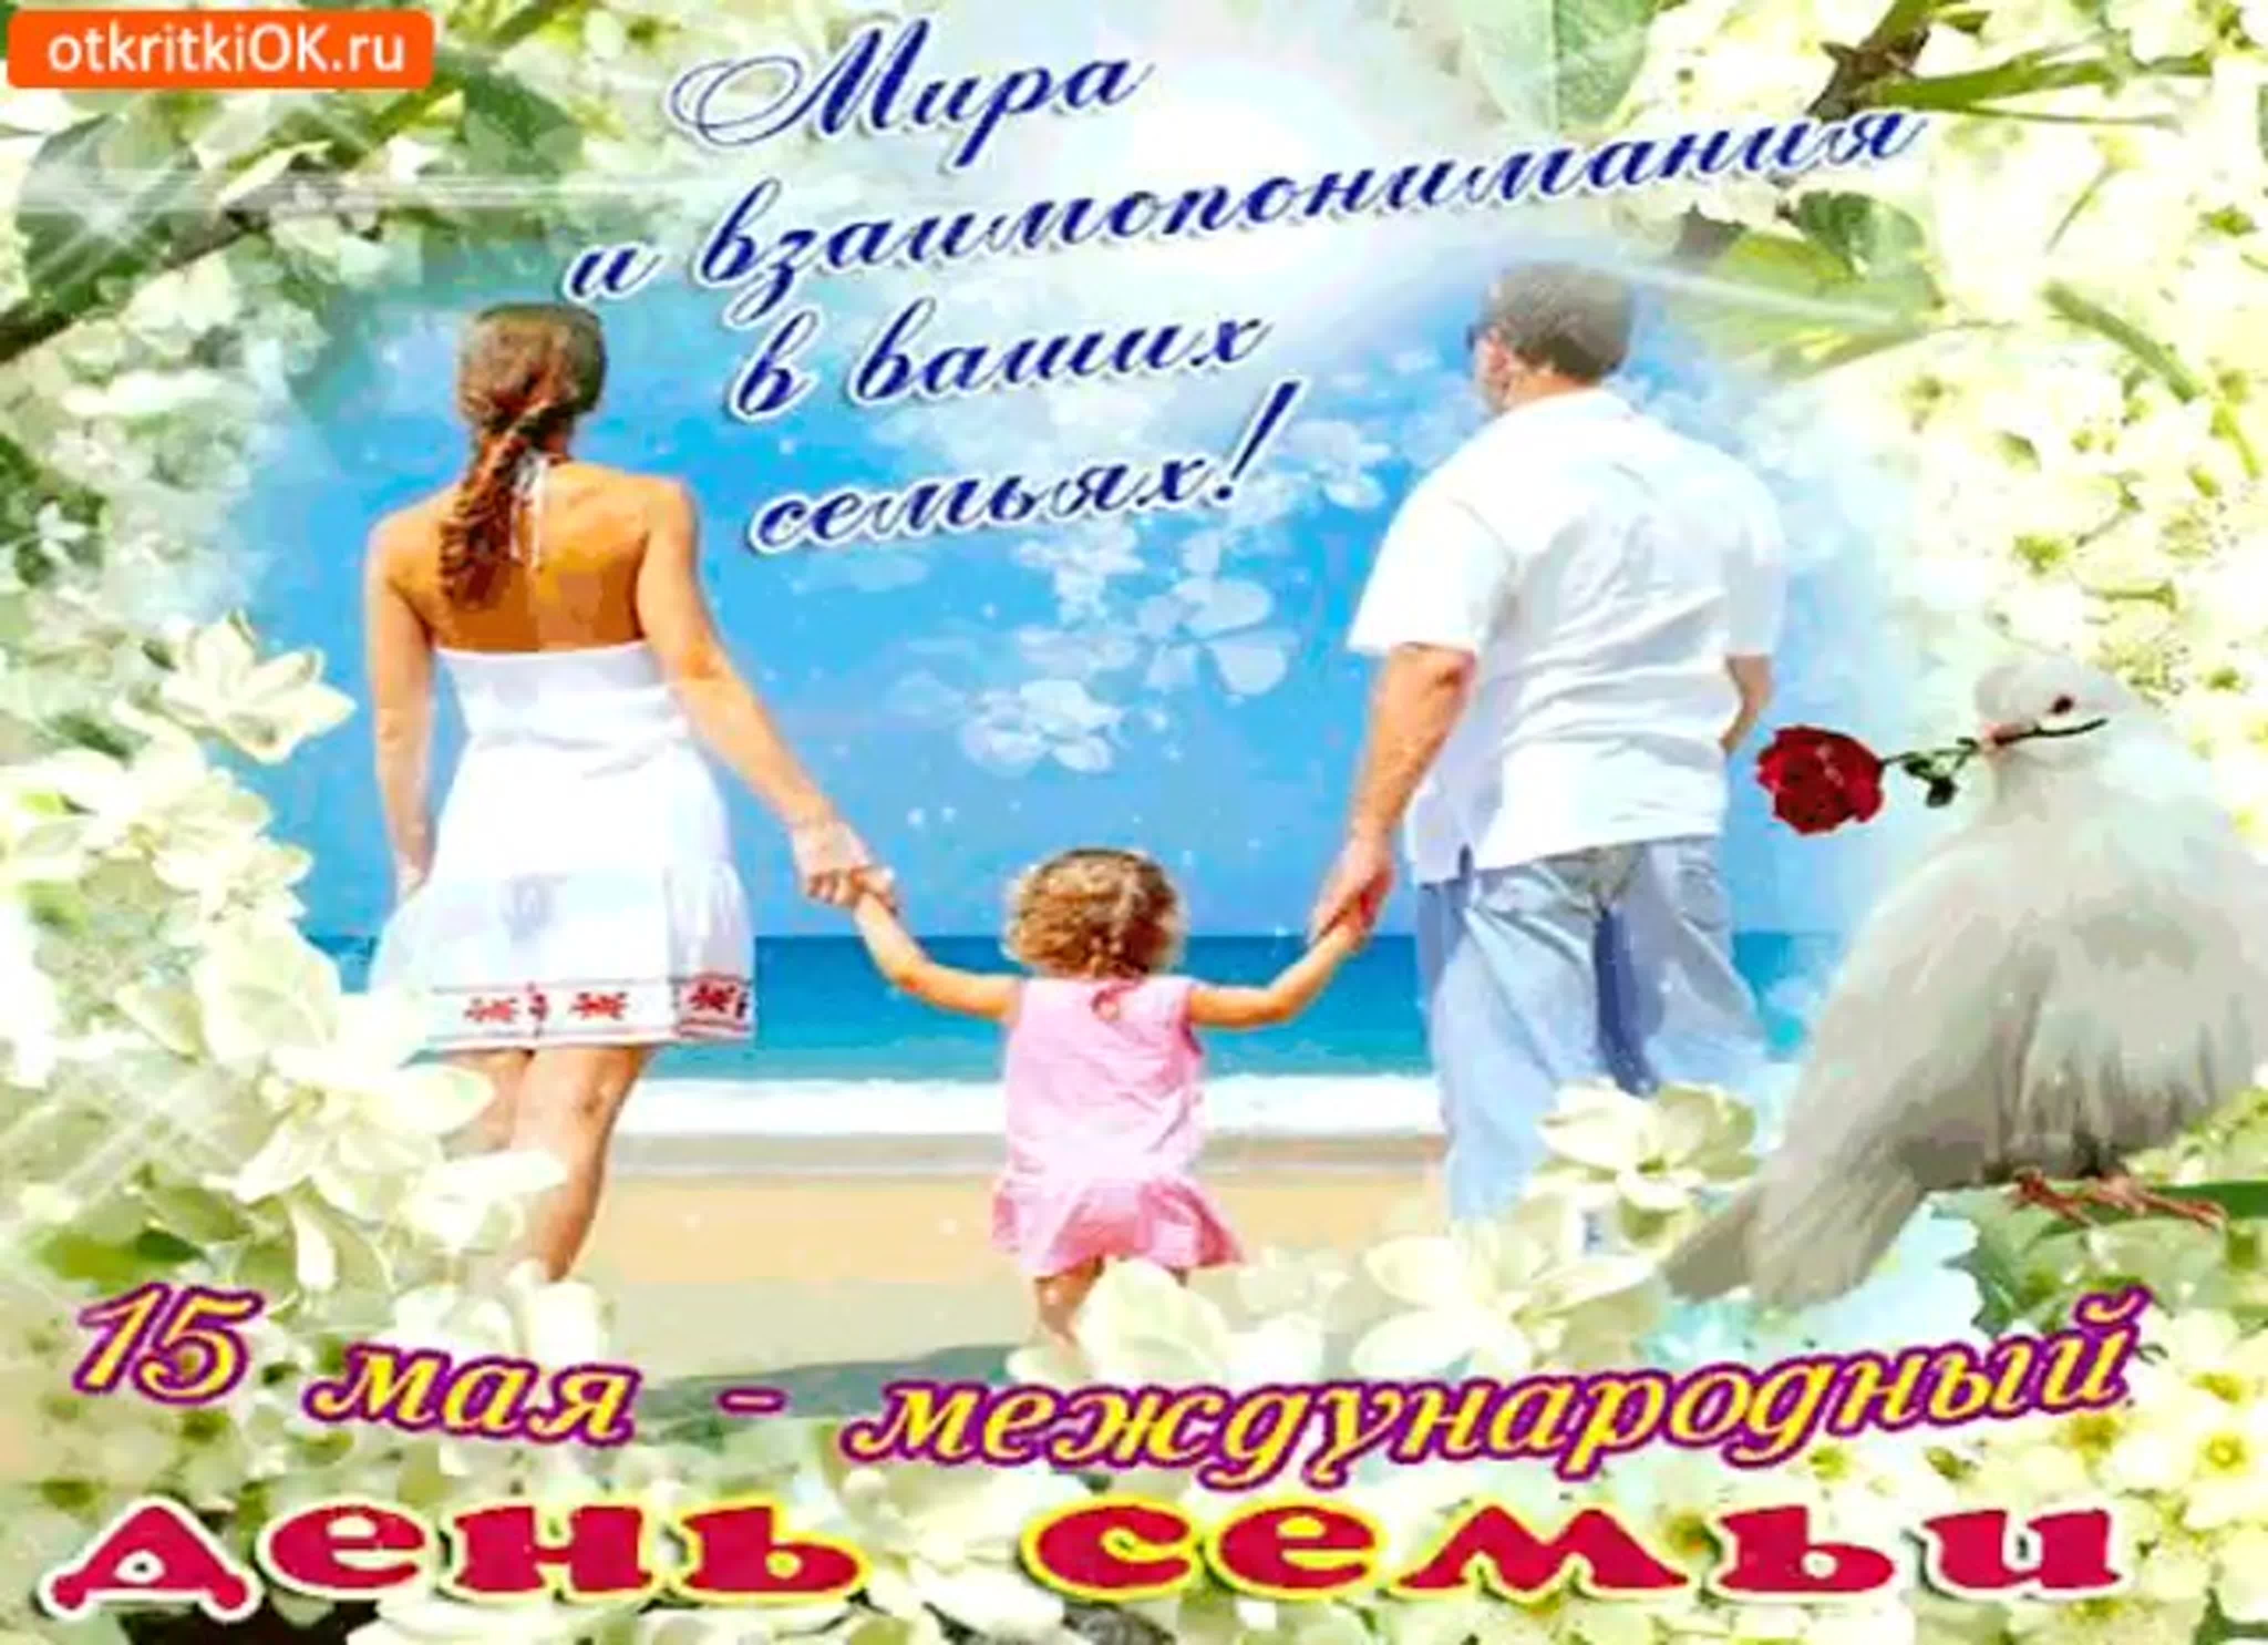 Какого мая день семьи. Международный день семьи открытки. Международный день семьи поздравление. День семьи 15 мая. День семьи 15 мая открытки.